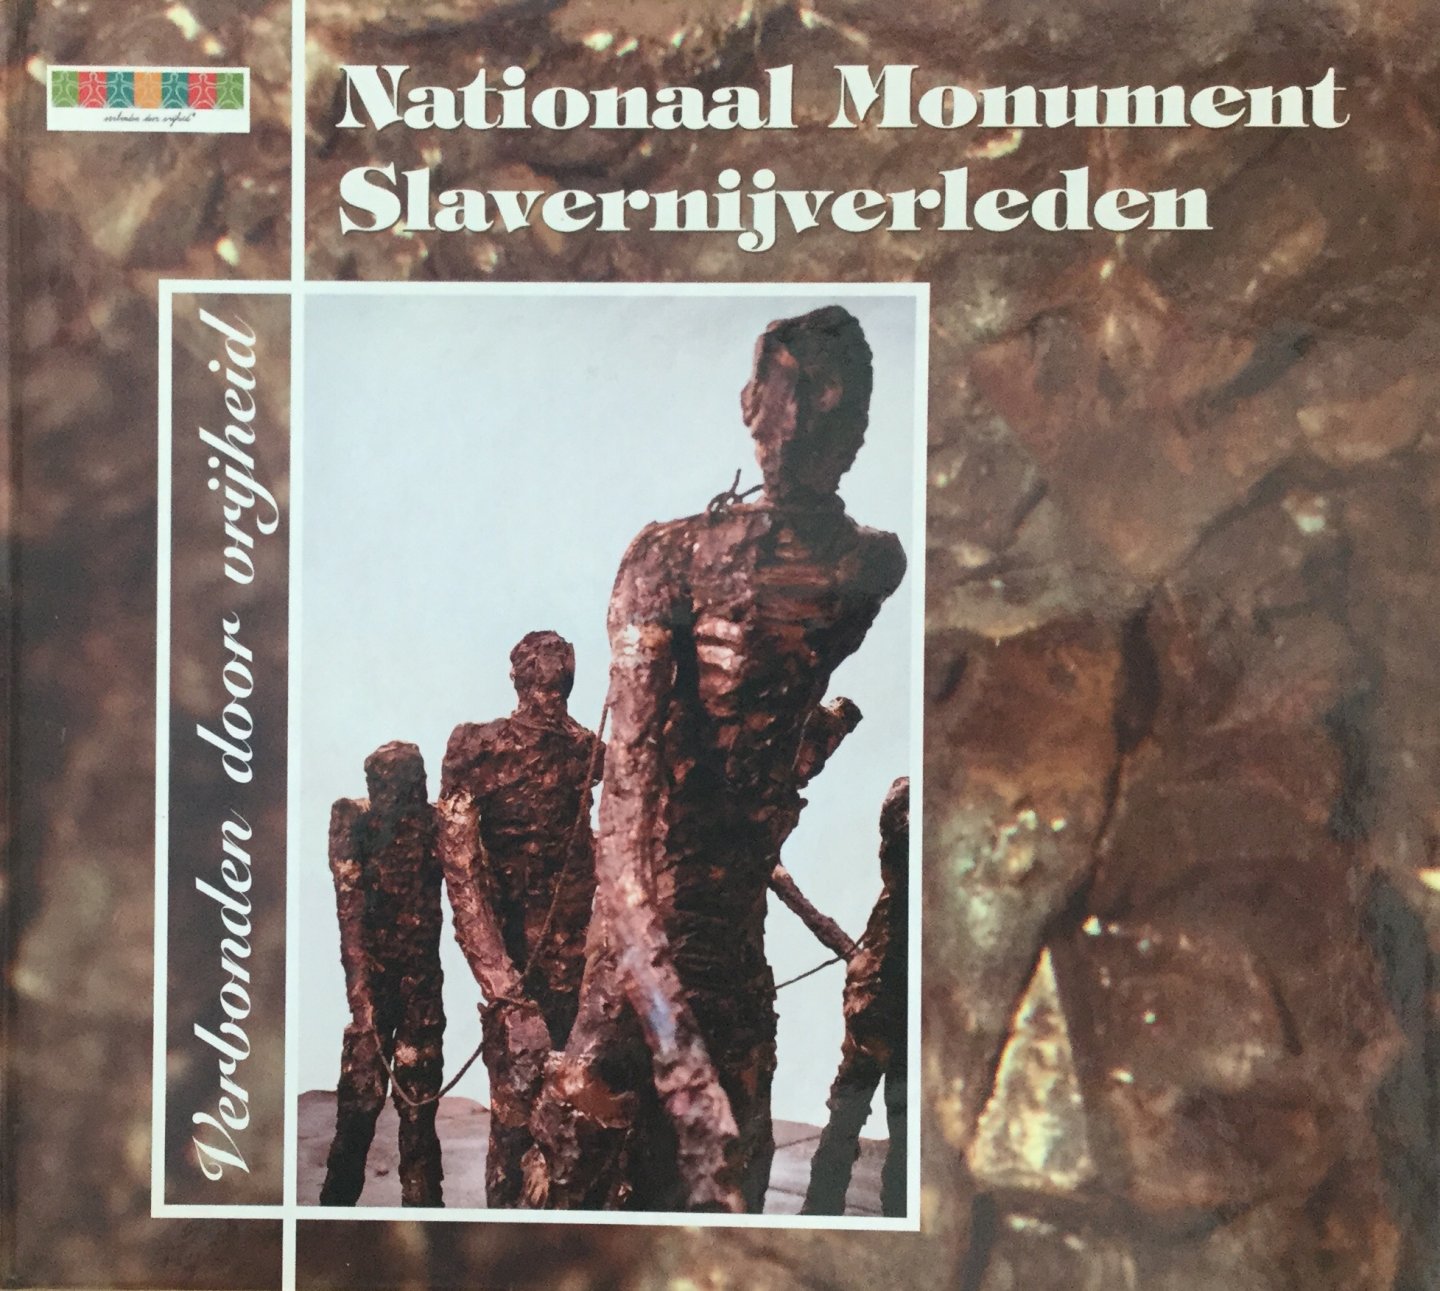  - Verbonden door vrijheid Het Nationaal Monument Slavernijverleden